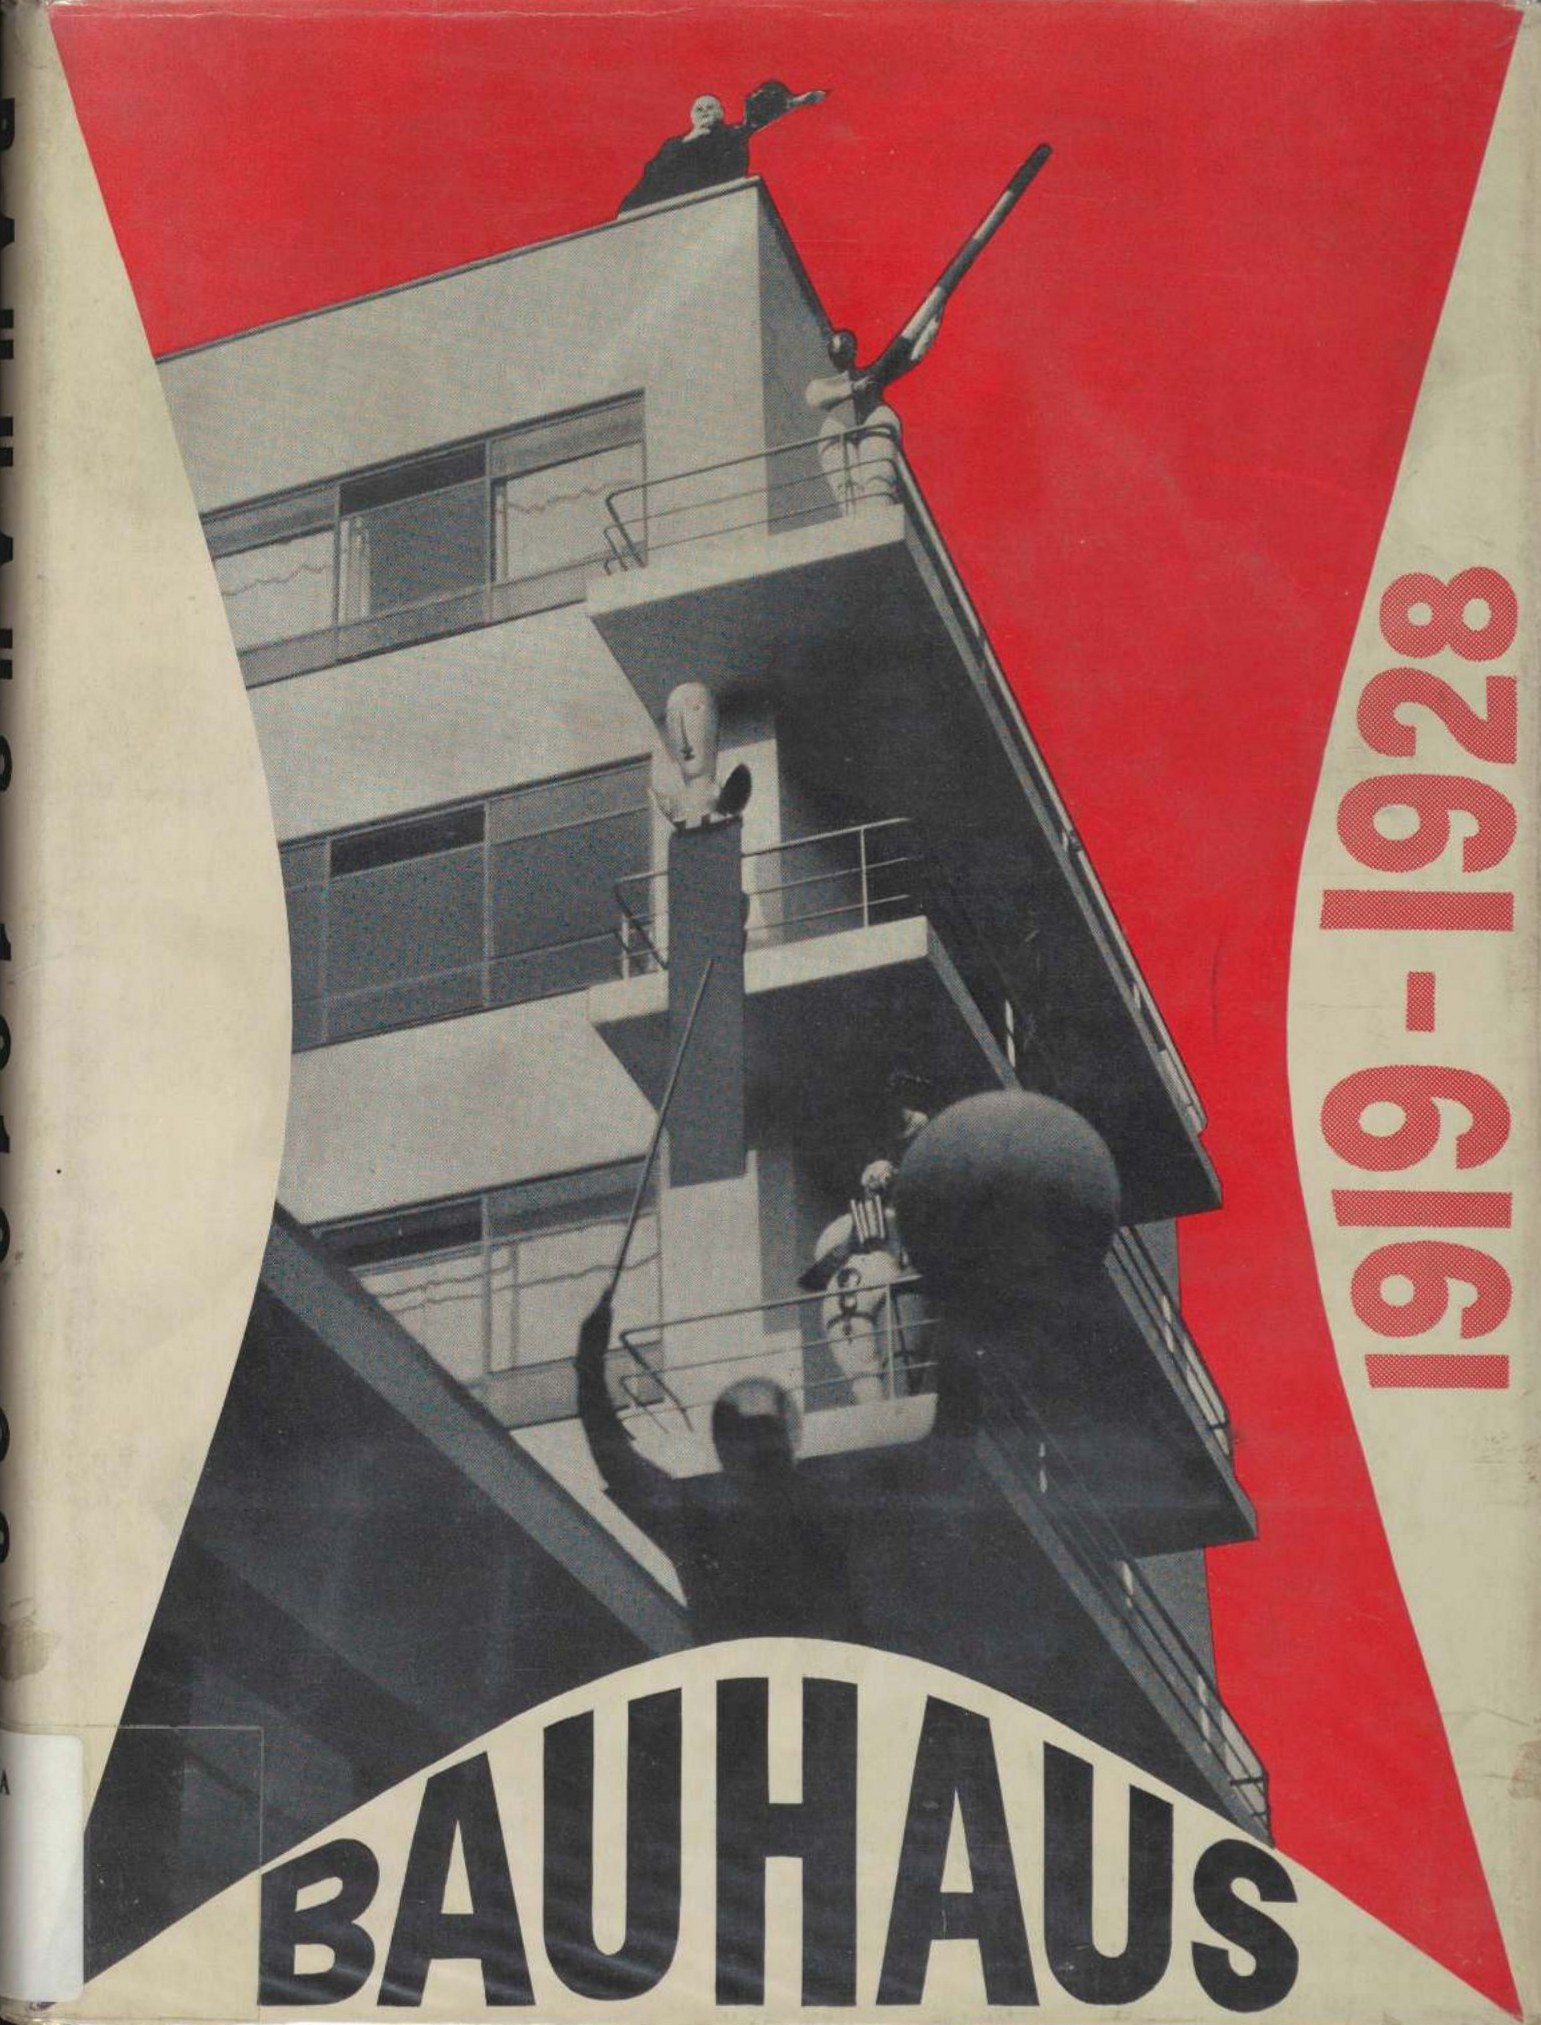 Bauhaus, 1919-1928 / Edited by Herbert Bayer, Walter Gropius, Ise Gropius (Chairman of the Department of Architecture, Harvard University). — New York : The Museum of Modern Art, 1938